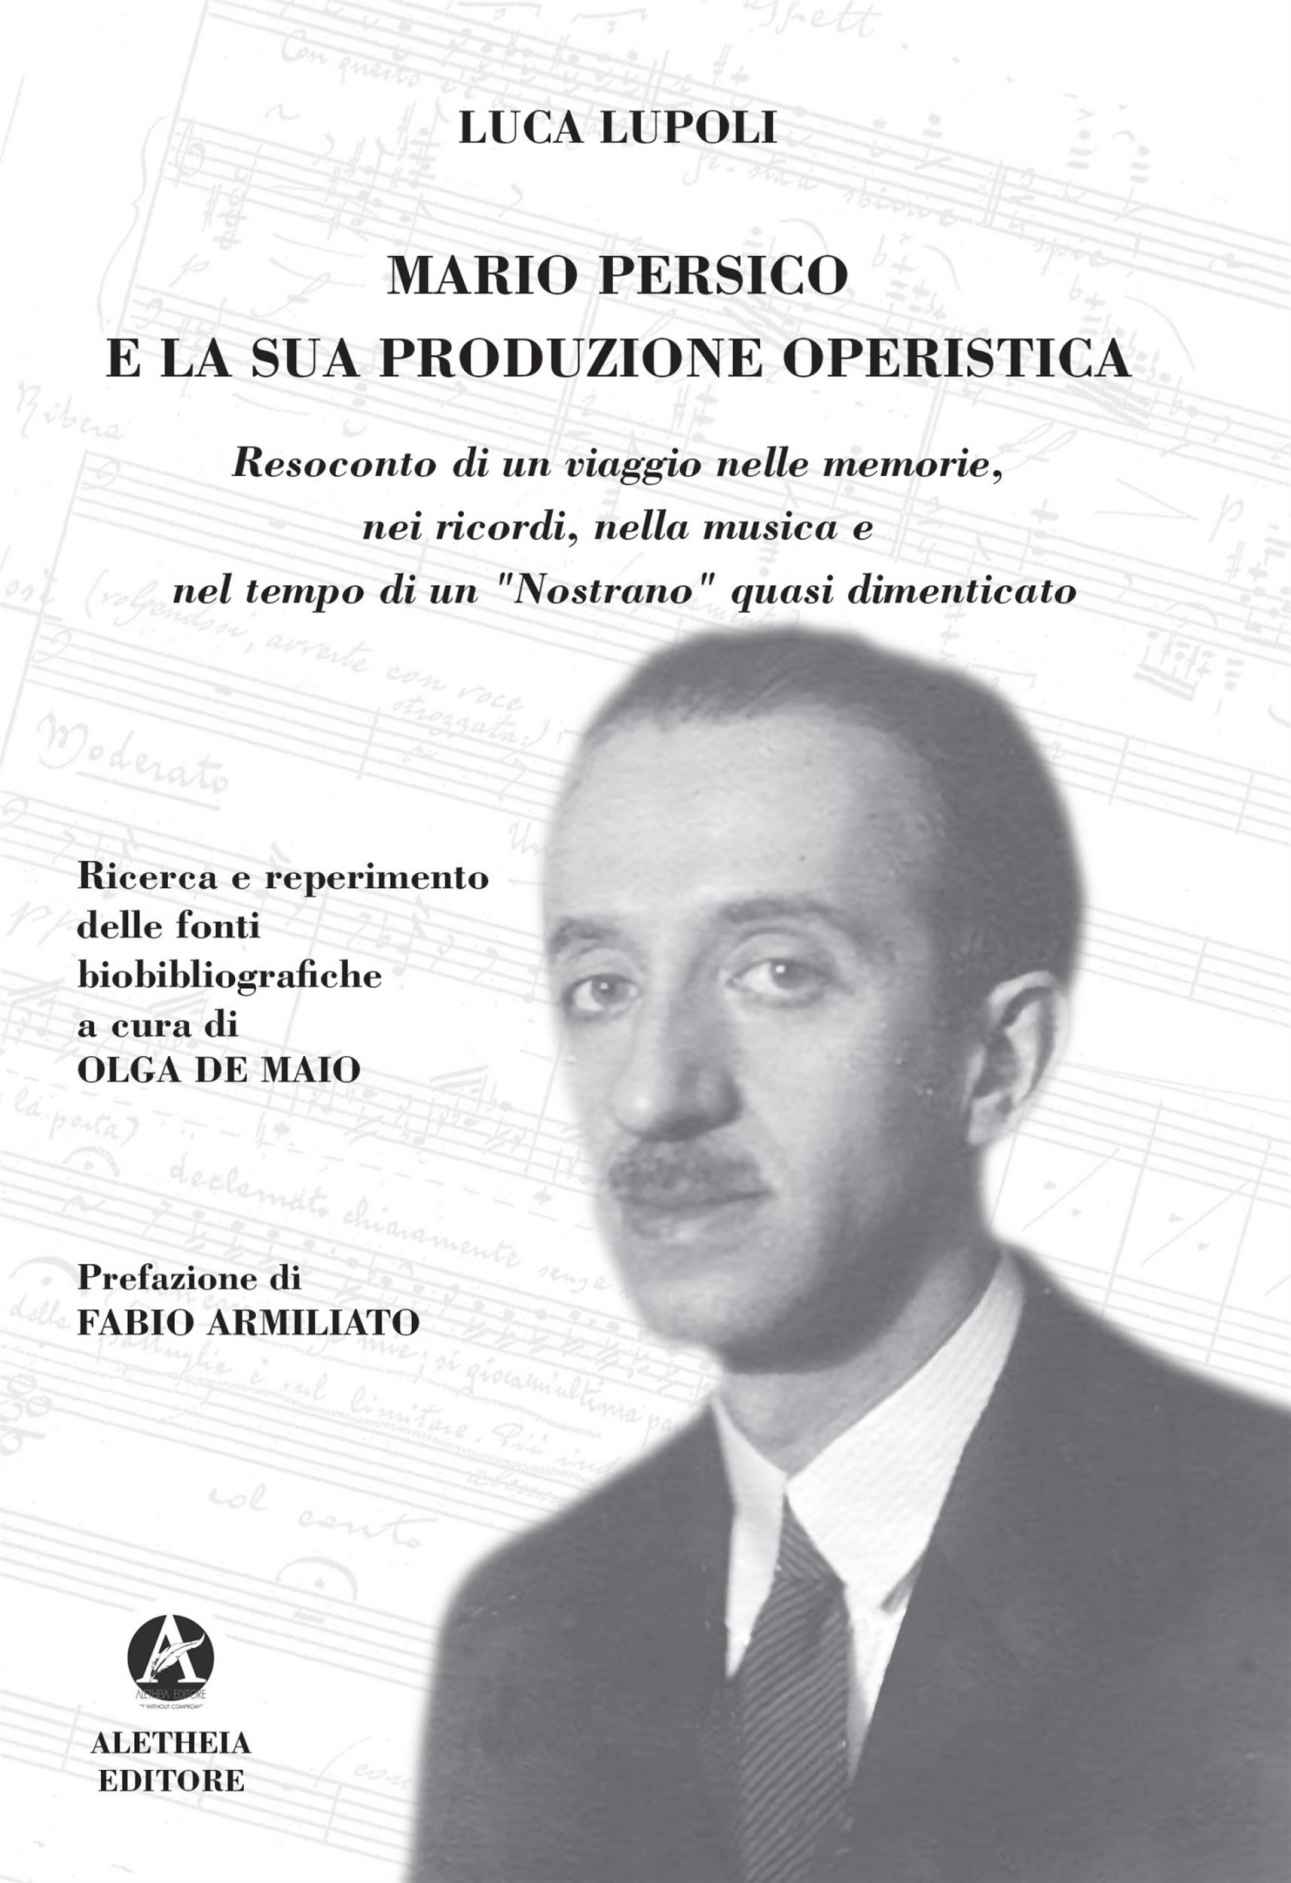 Al momento stai visualizzando Mario Persico un musicista da riscoprire nel saggio di Luca Lupoli